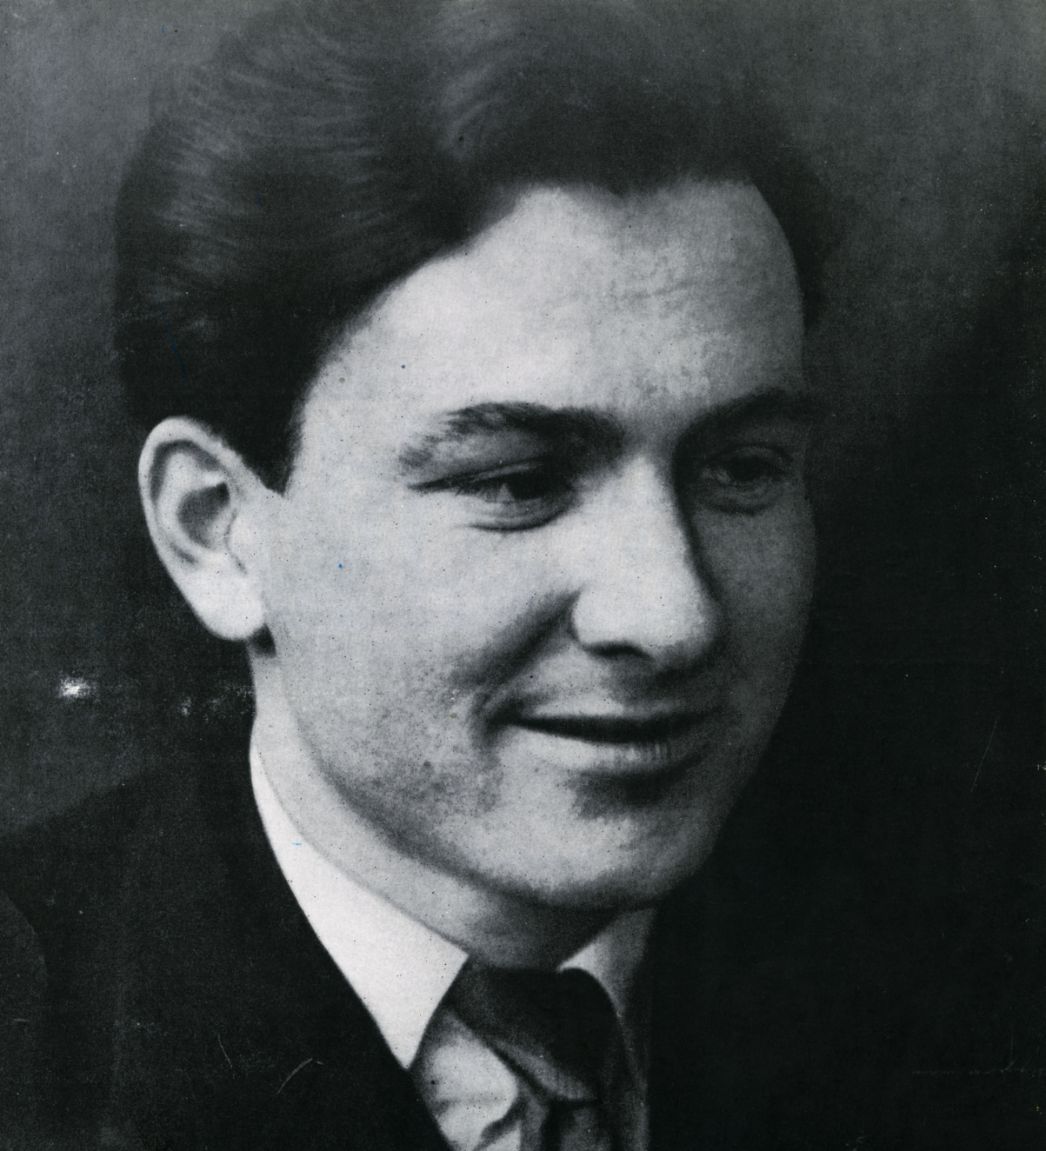 Portrait photograph of Franz Ehrlich